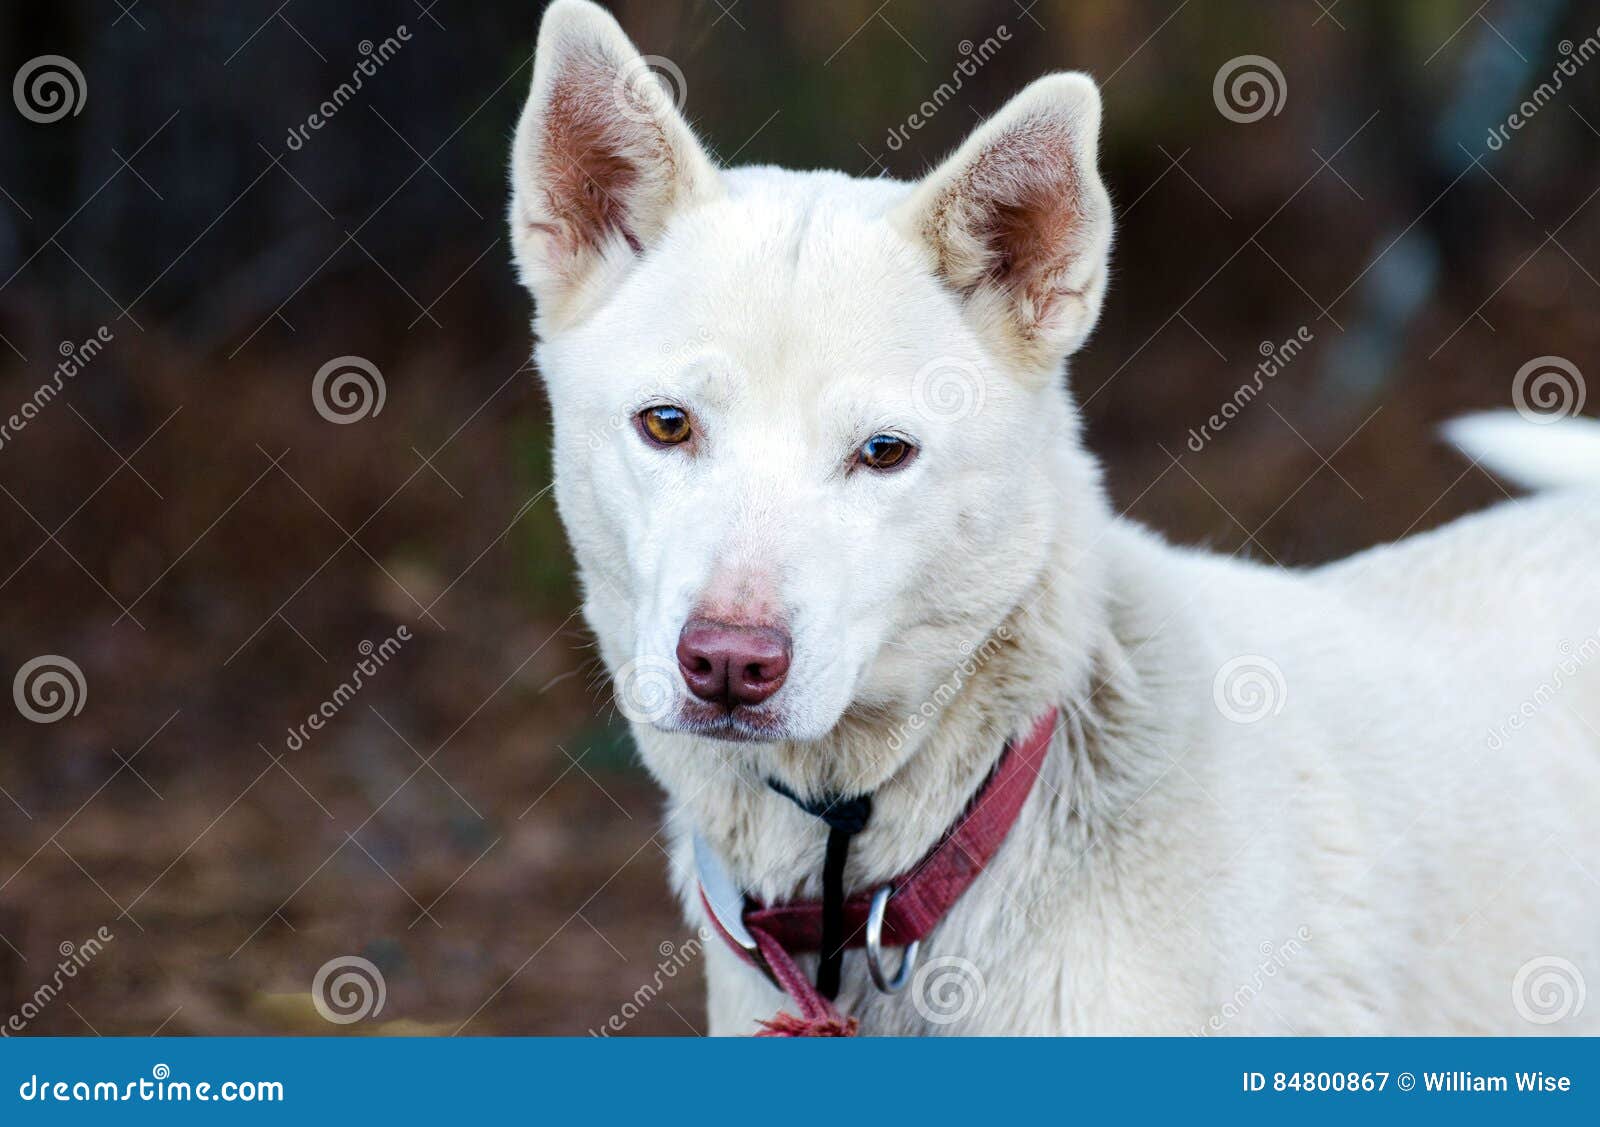 White Shepherd Husky Mixed Breed Dog Stock Image - Image of puppy, sheepdog: